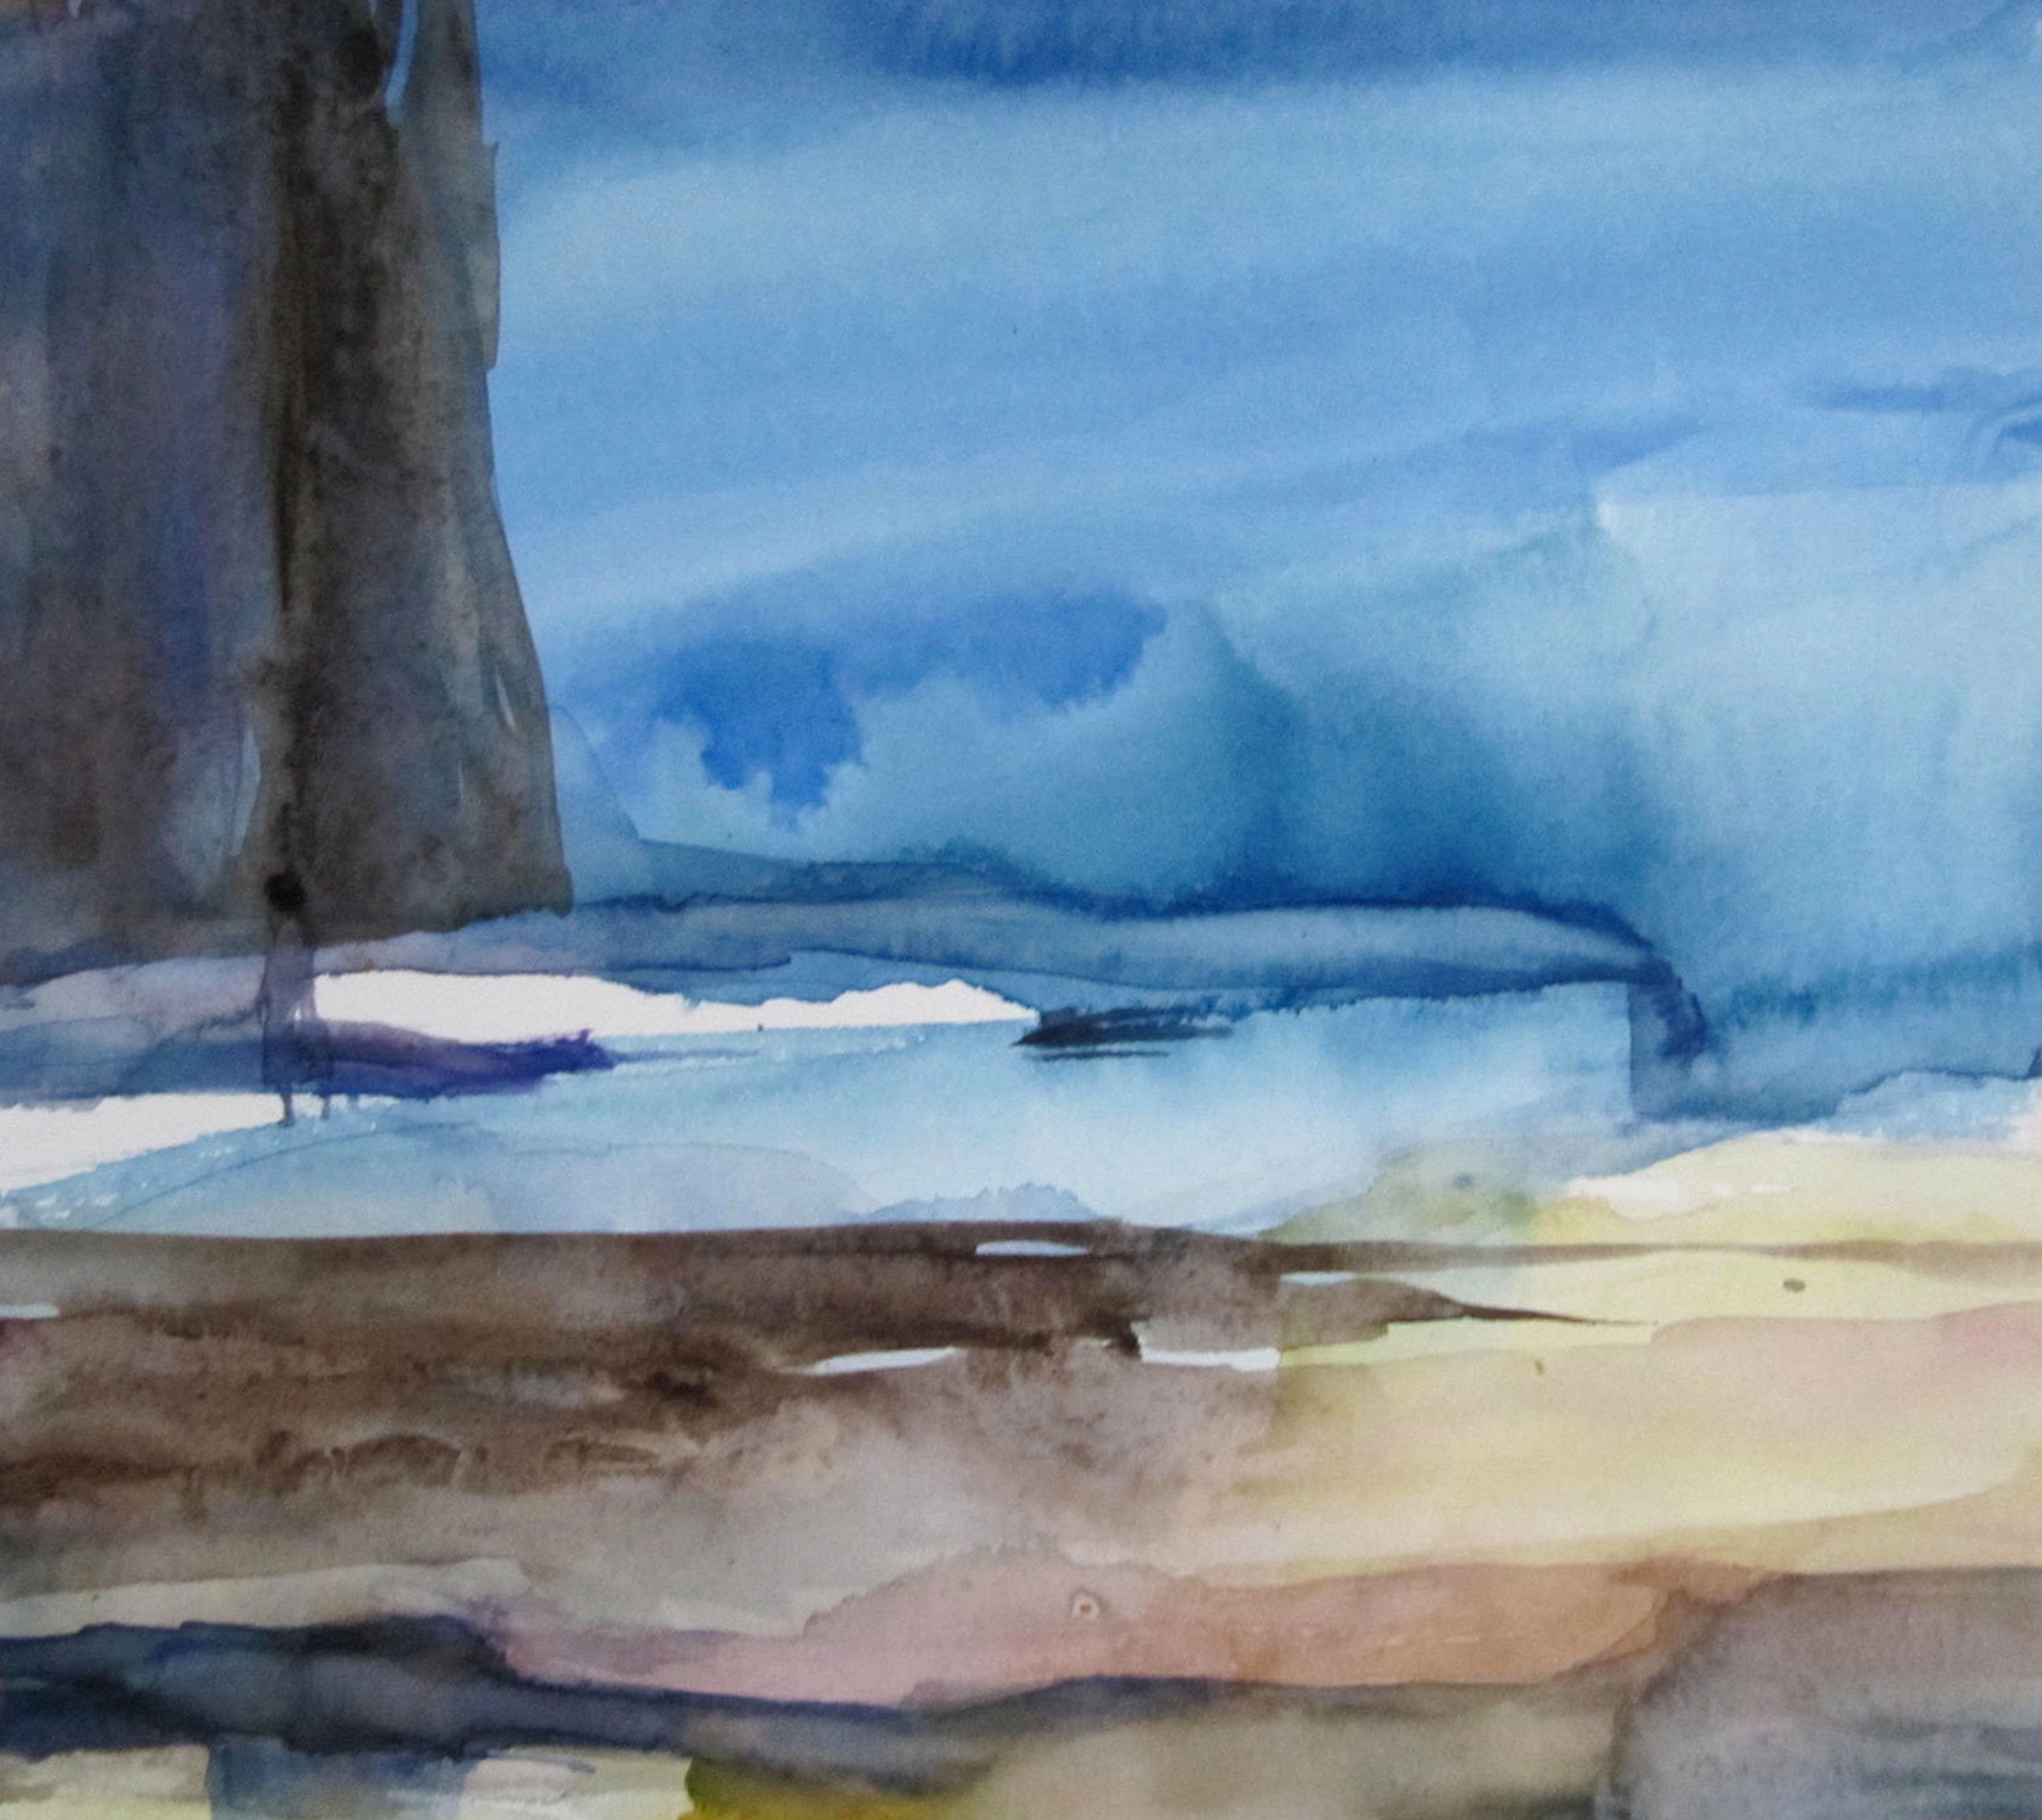 L'opera "Utopia" di Sylvia Baldeva è un dipinto paesaggistico ad acquerello, paesaggio, utopia, irrealtà, sogno, simbolismo, astrazione, acquerello su carta Canson®. Colore blu, sabbia, marrone.